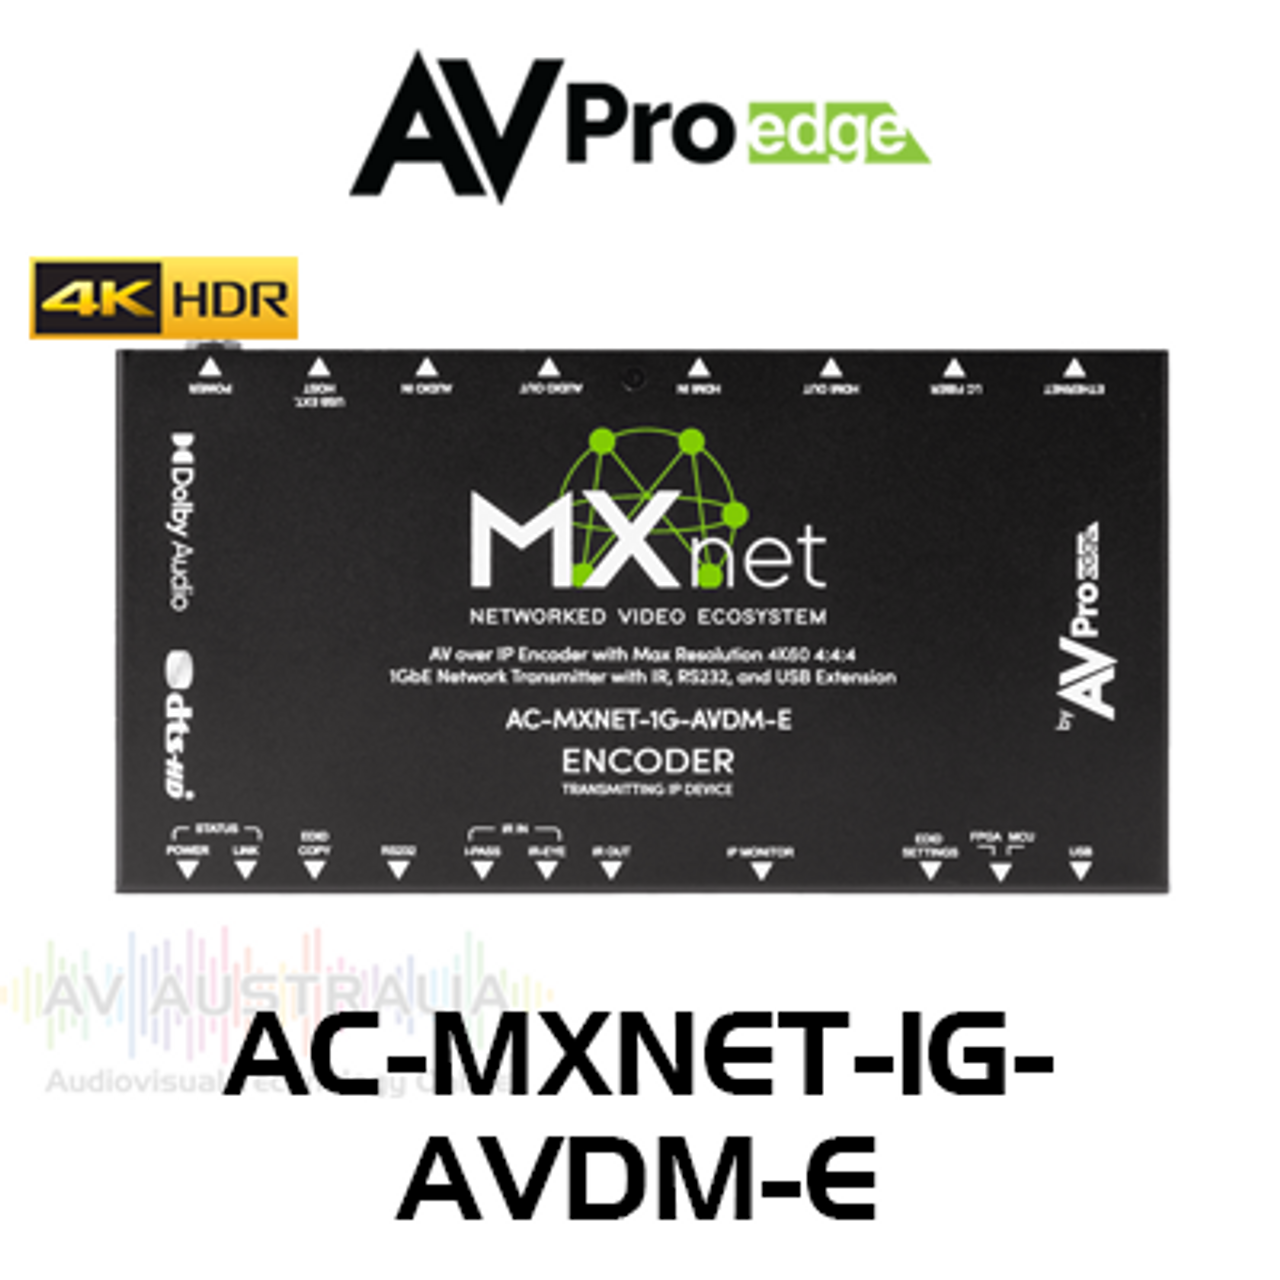 AVPro Edge MxNet 4K60 4:4:4 AV Over IP 1GbE Network Downmixing Transmitter with IR, RS232 & USB